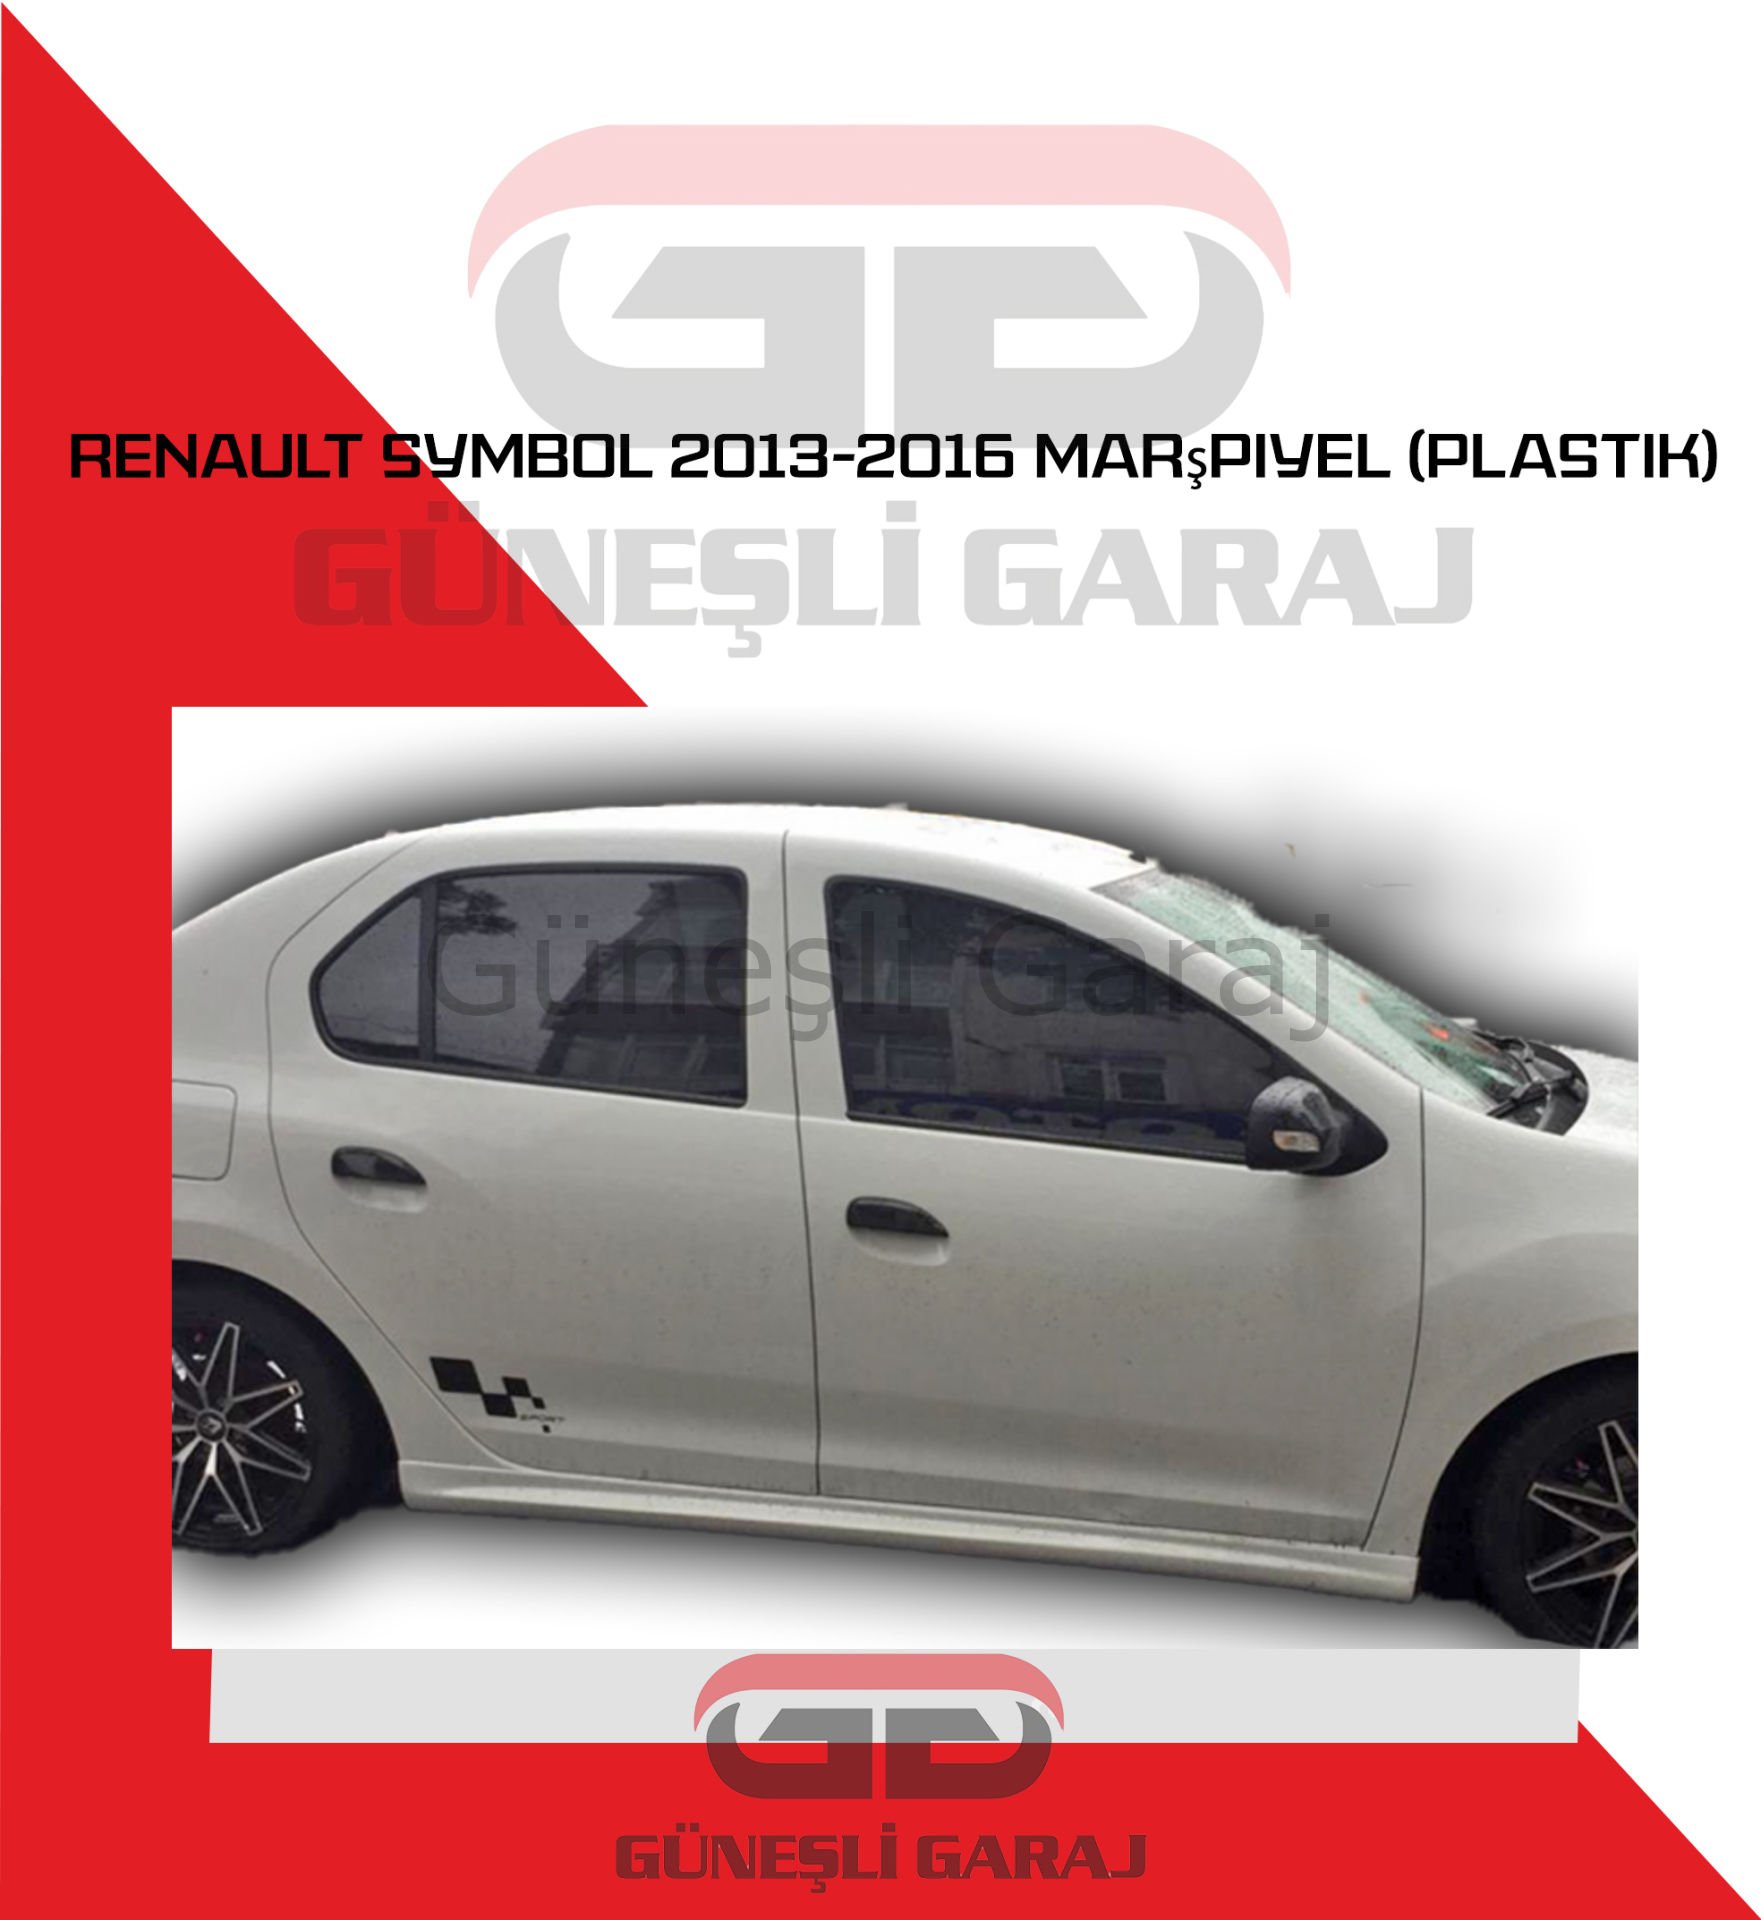 Renault Symbol 2013-2016 Marşpiyel (Plastik)